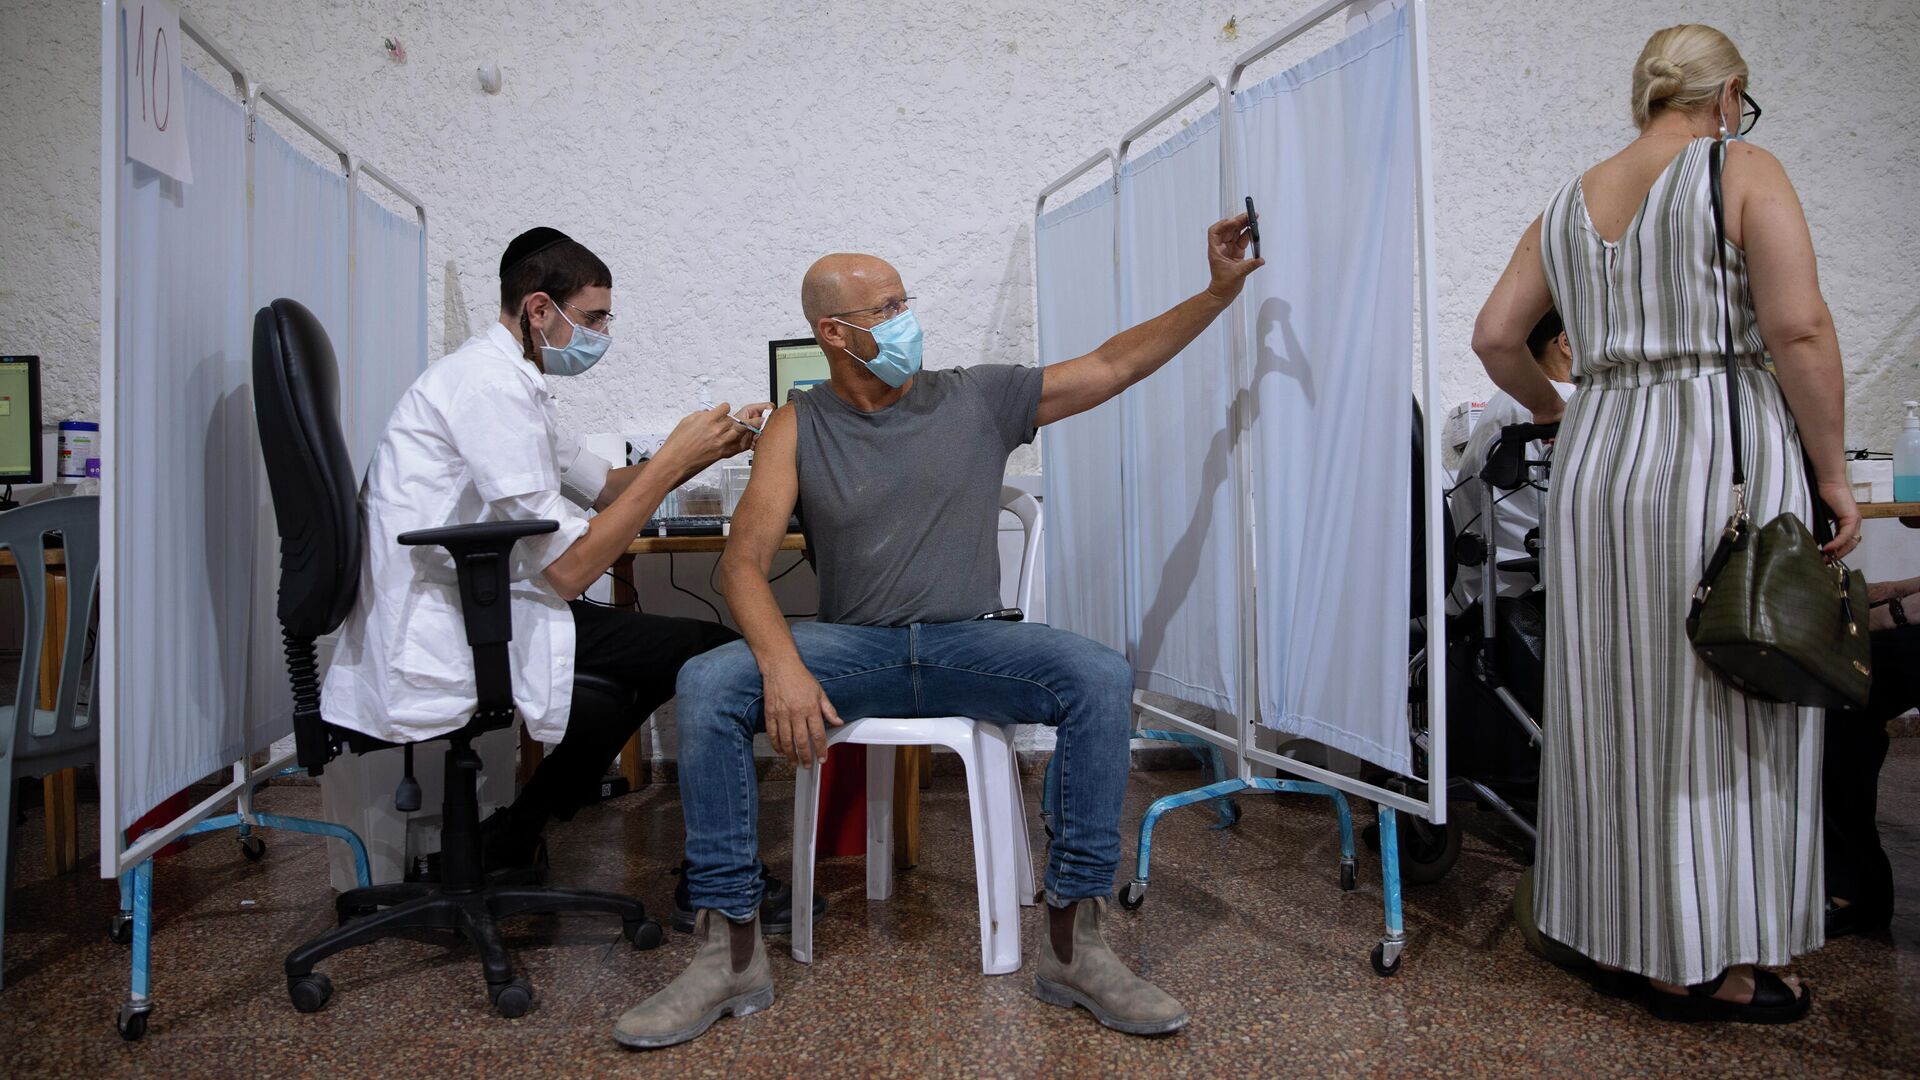 Израильтянин делает селфи во время вакцинации препаратом Pfizer-BioNTech COVID-19 в Рамат-Гане, Израиль - РИА Новости, 1920, 24.12.2021